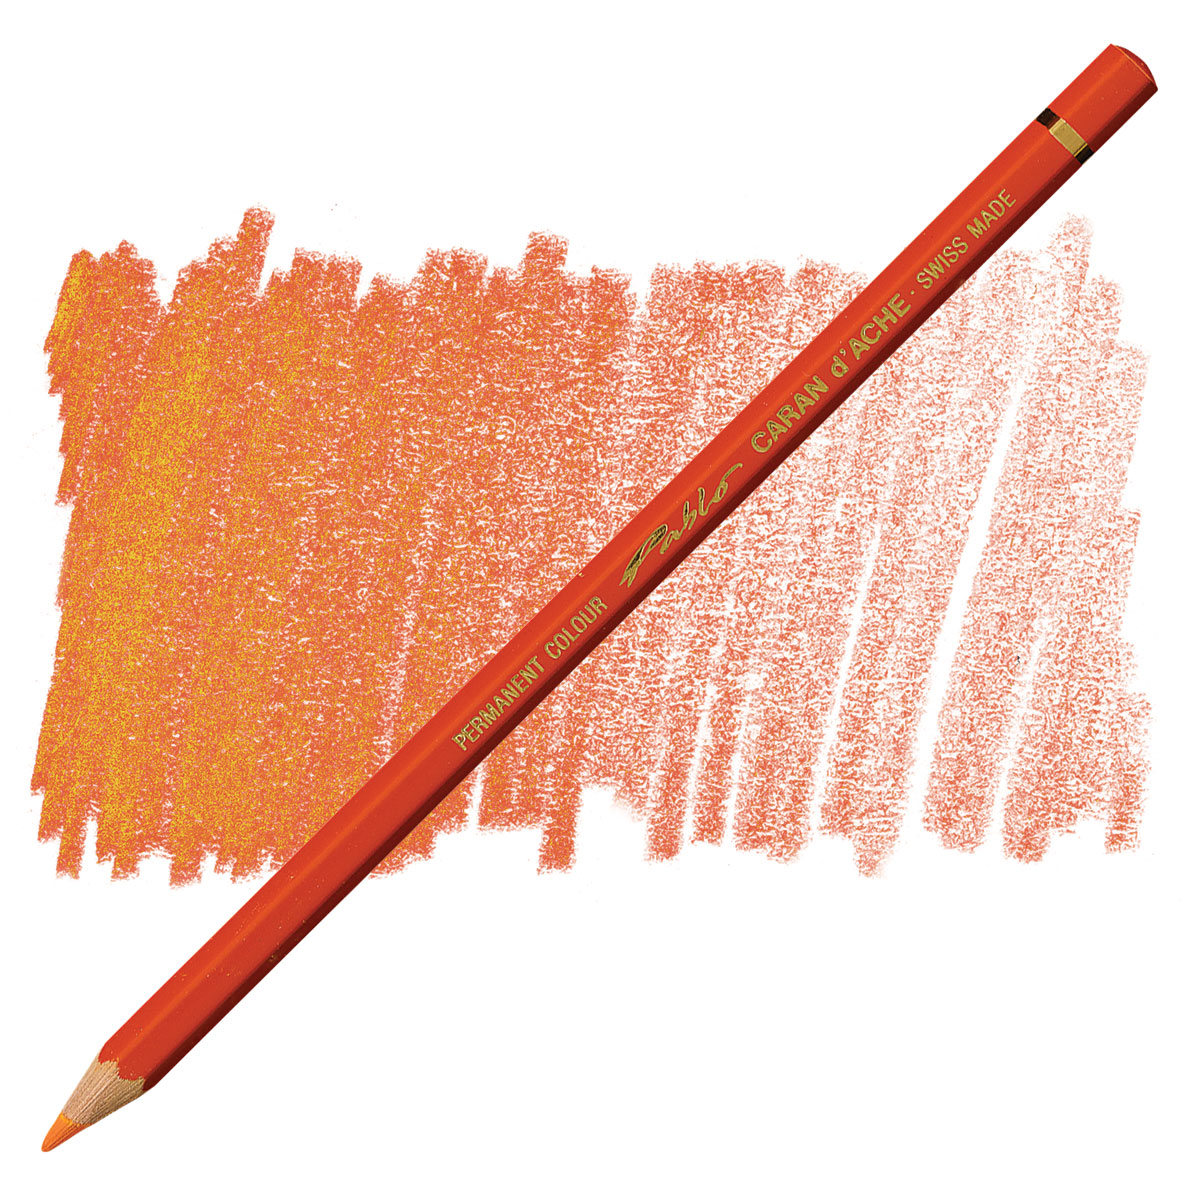 Caran d'Ache Pablo Permanent Colour Pencil 30 Set